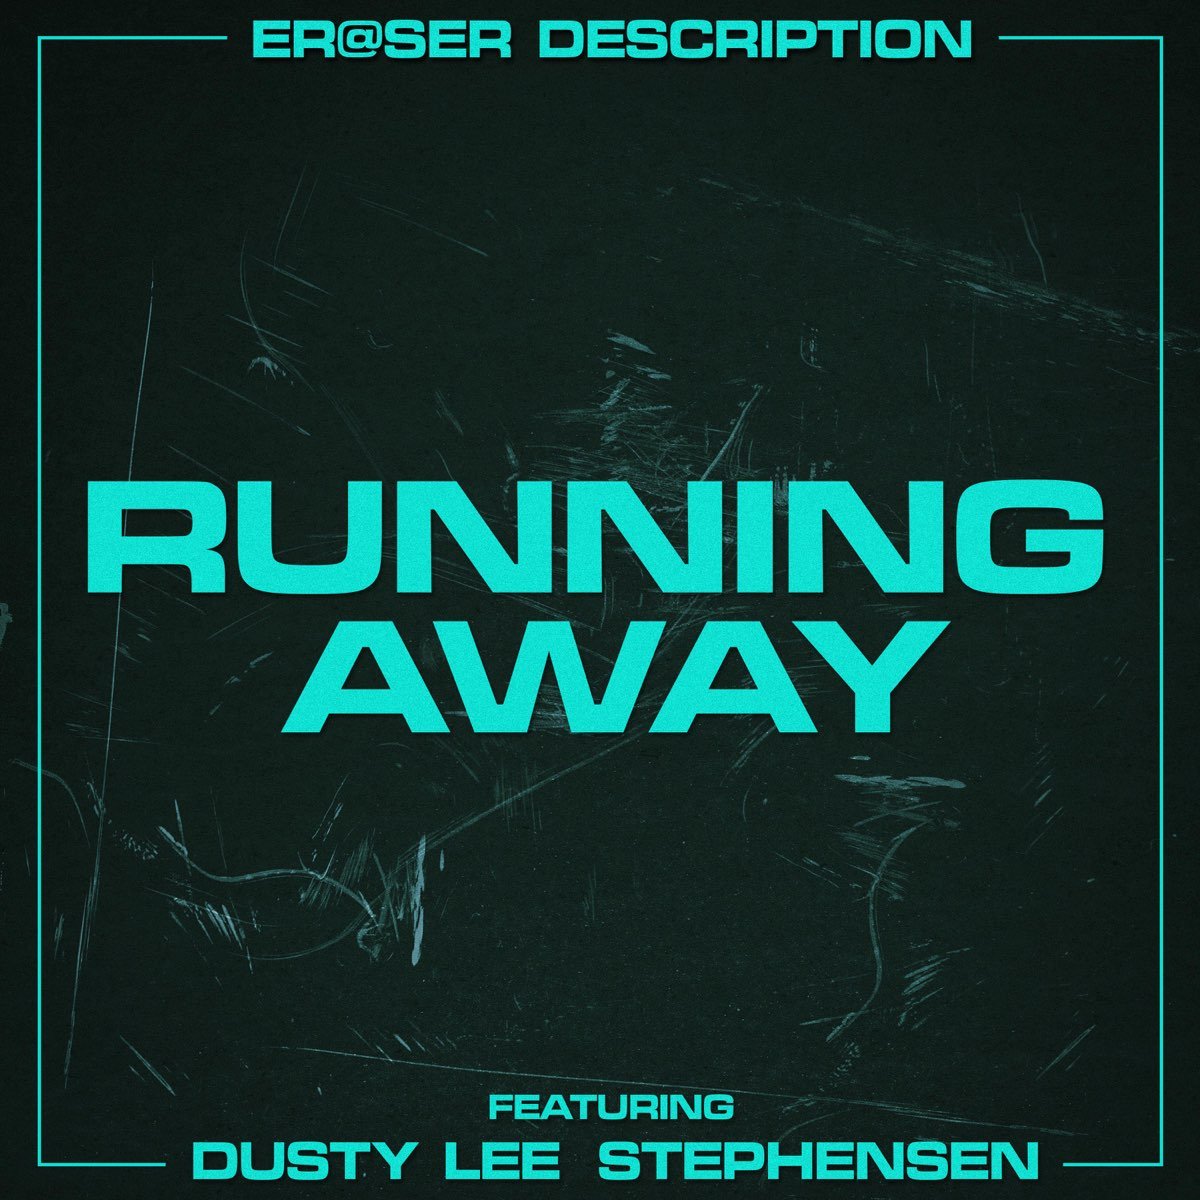 ER@SER - Running Away cover art.jpeg